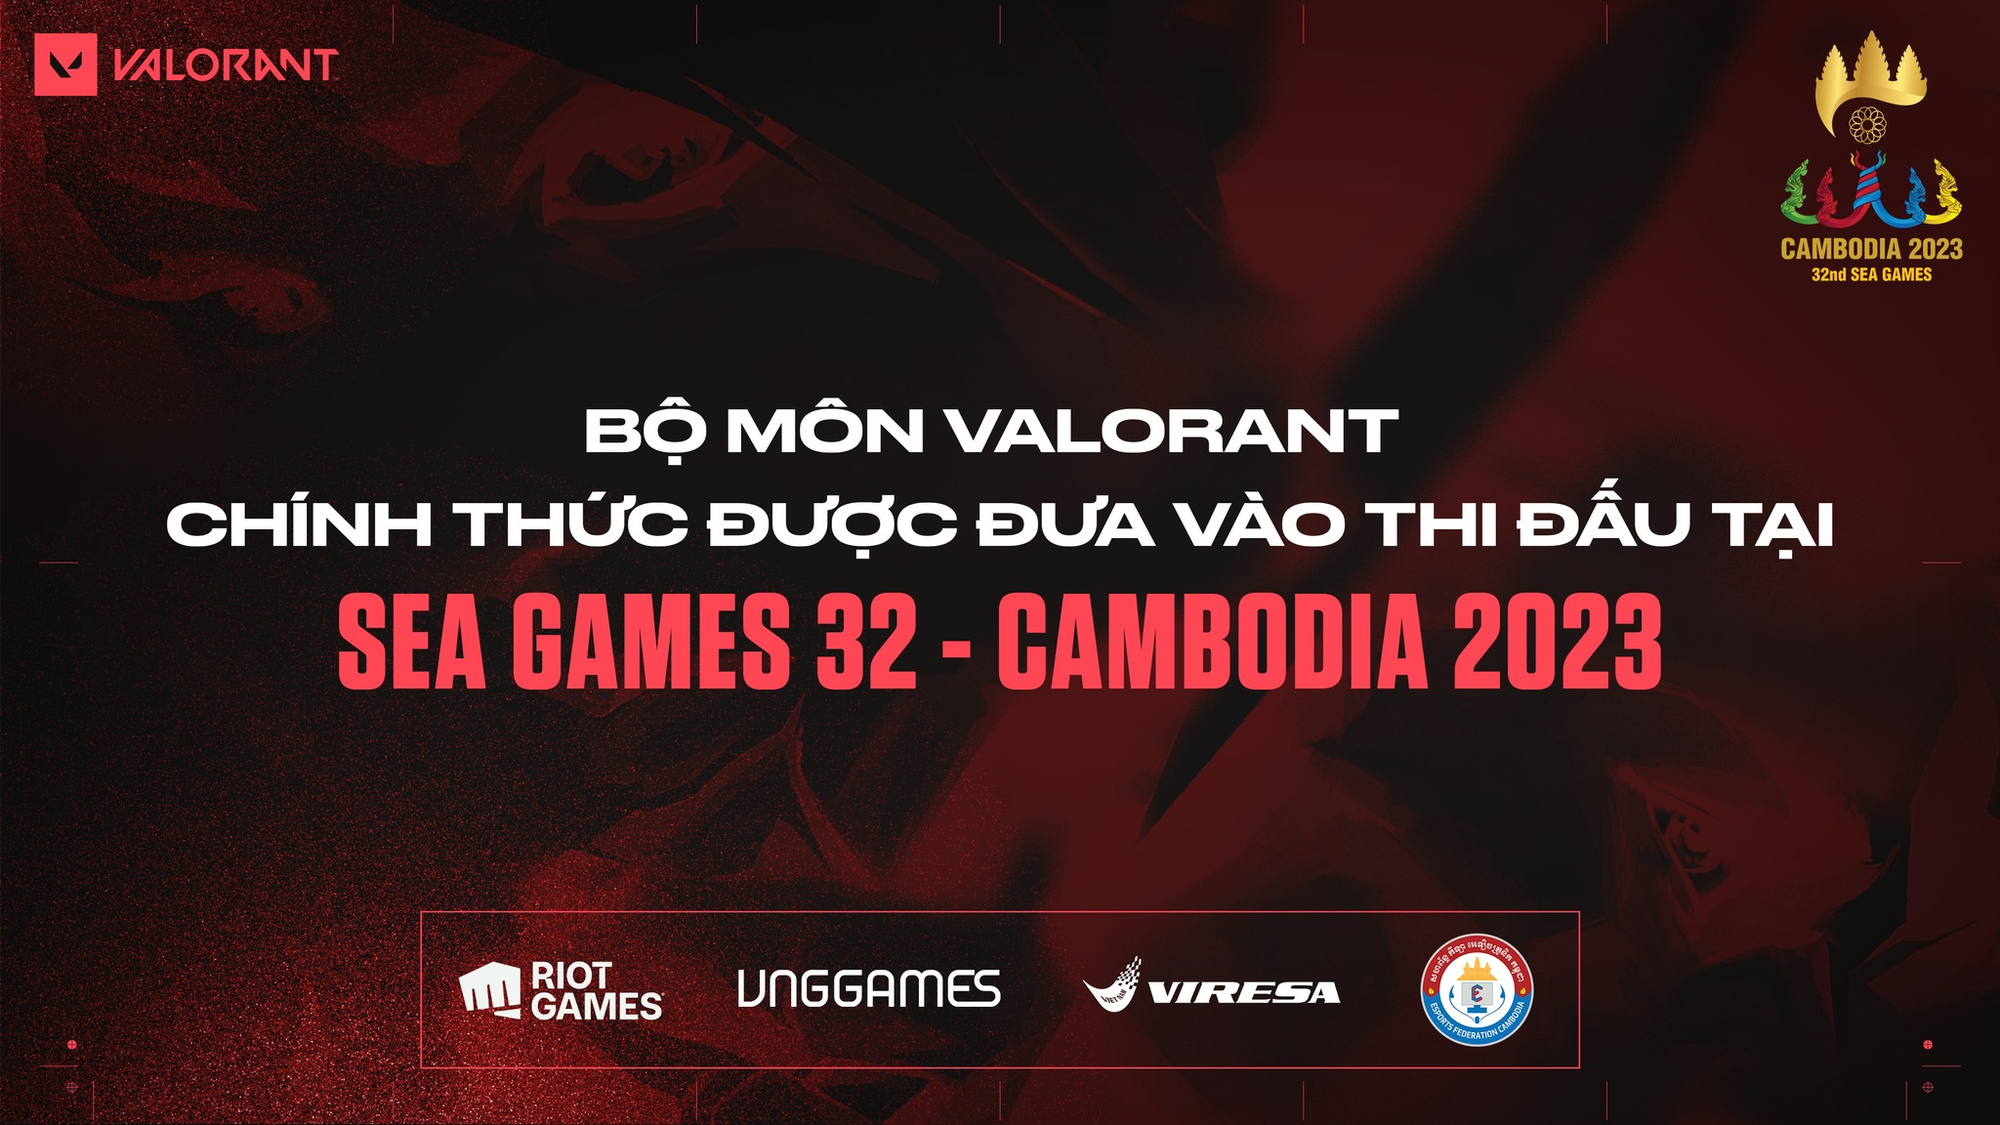 Bom tấn của Riot do VNG phát hành chính thức được đưa vào thi đấu tại SEA Games 32 - Ảnh 1.